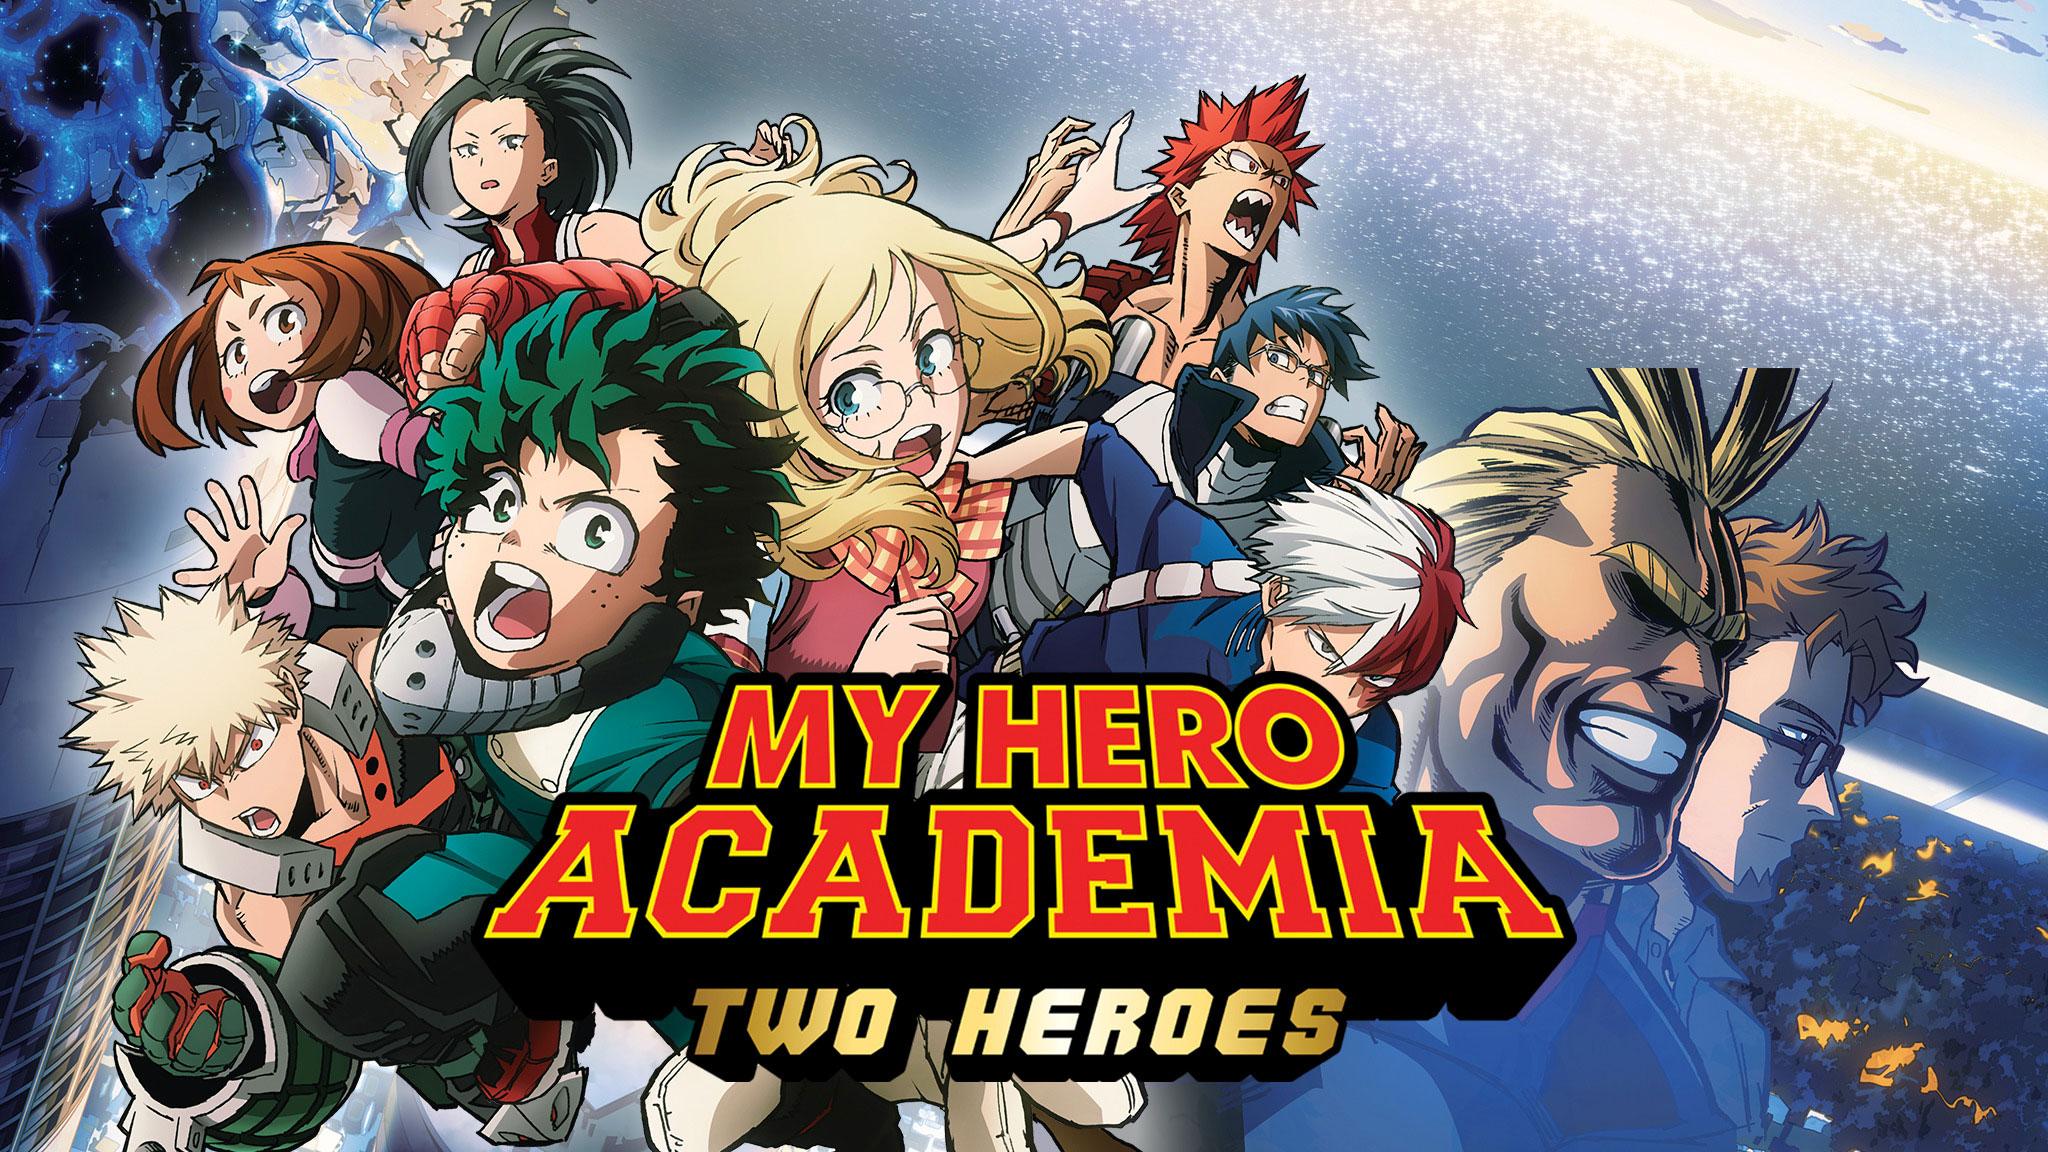 My Hero Academia Two Heroes Full Movie Free Online